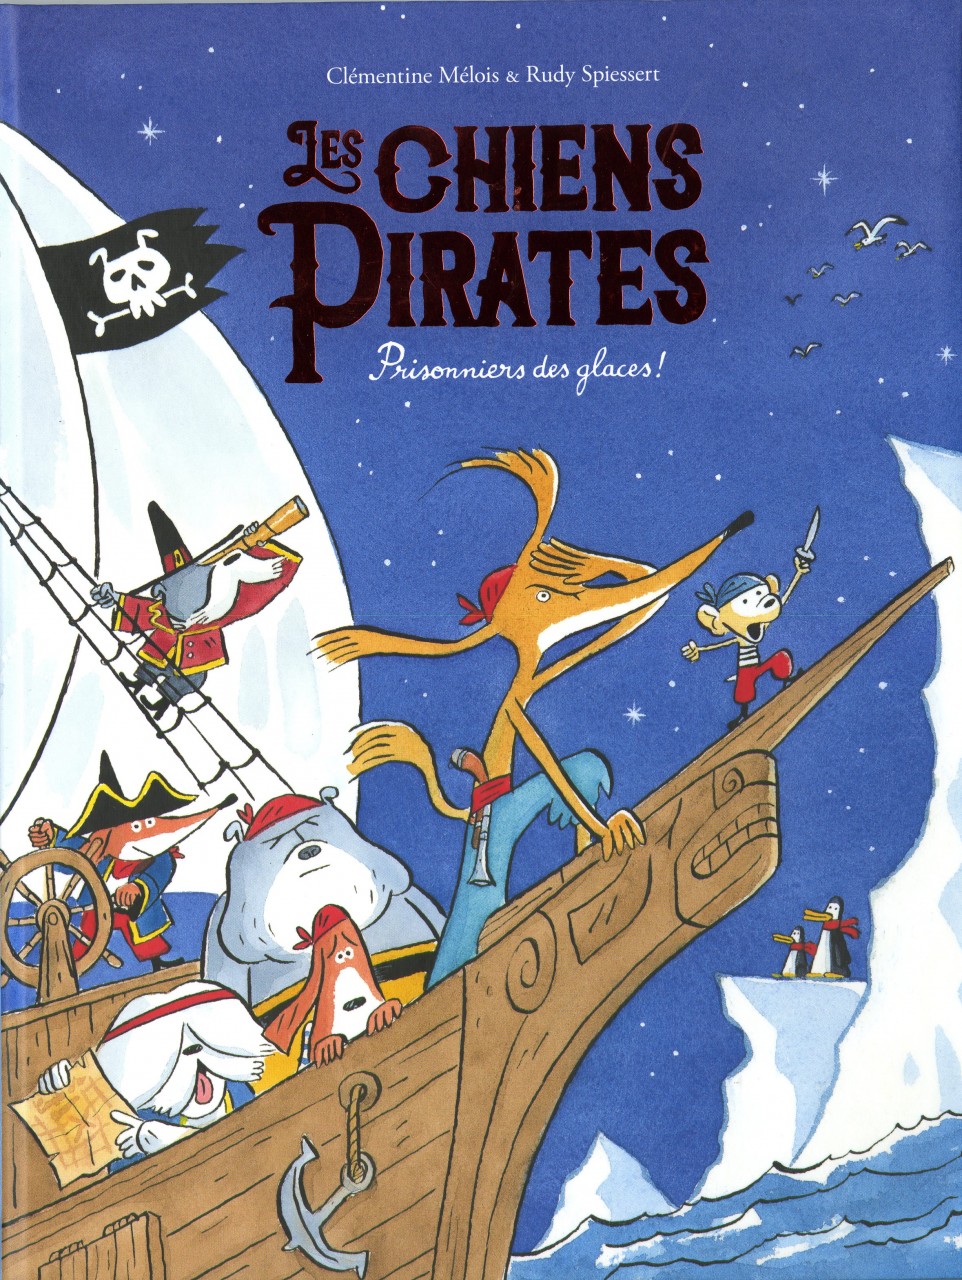 Première couverture du livre "Les chiens pirates" avec 7 chiens sur un bateau pirate et au loin 2 pingouins sur la banquise